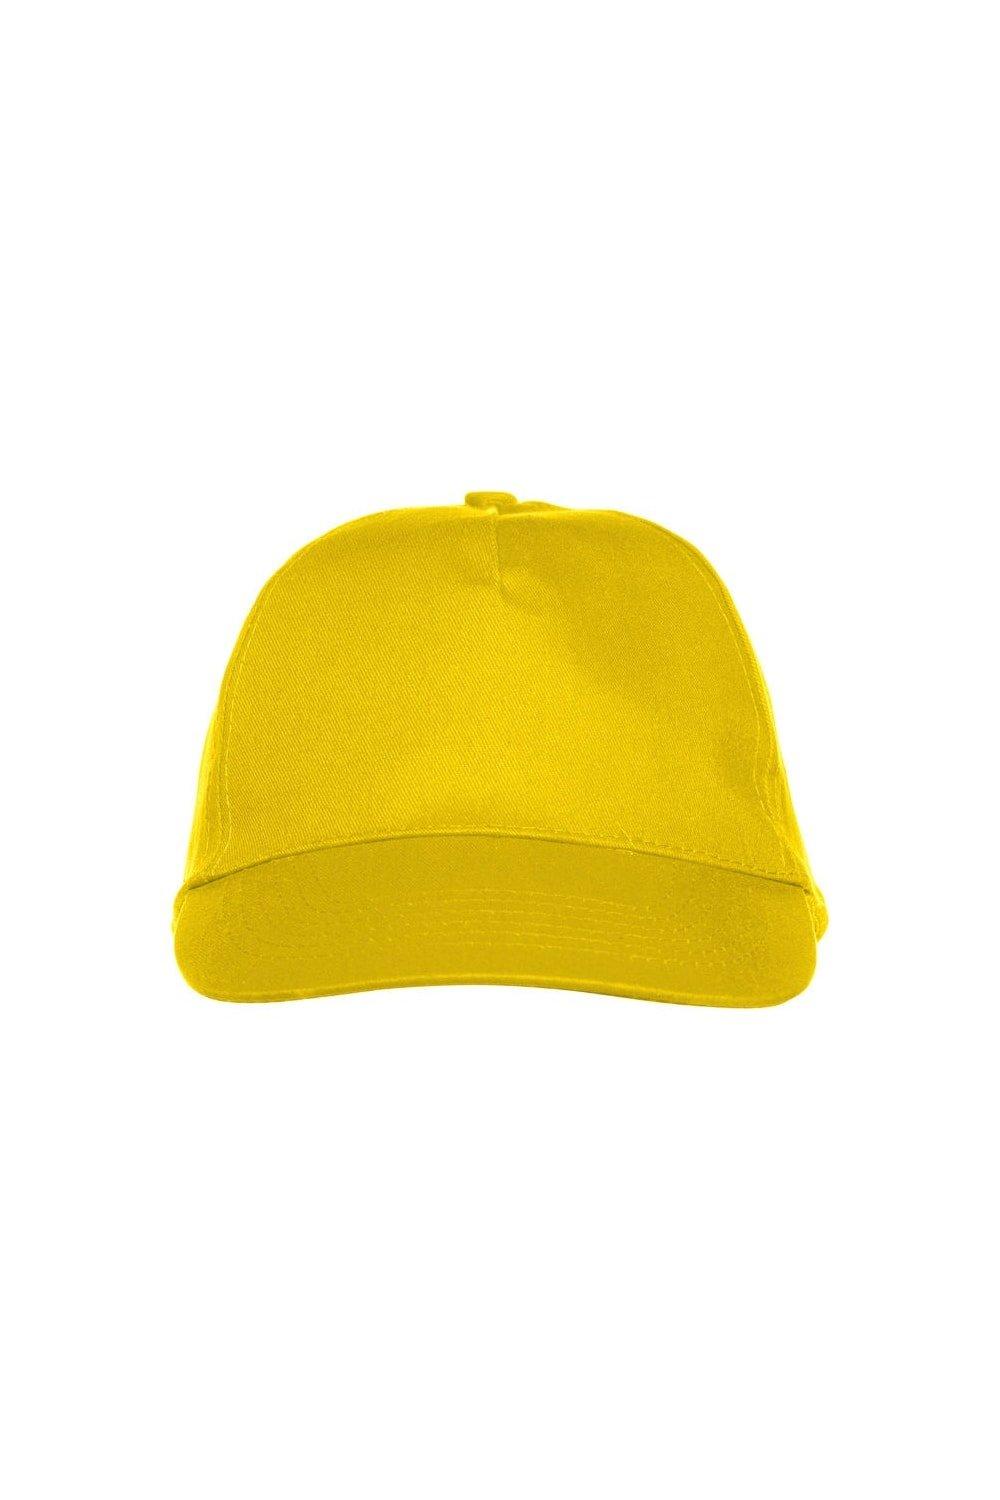 Техасская кепка Clique, желтый